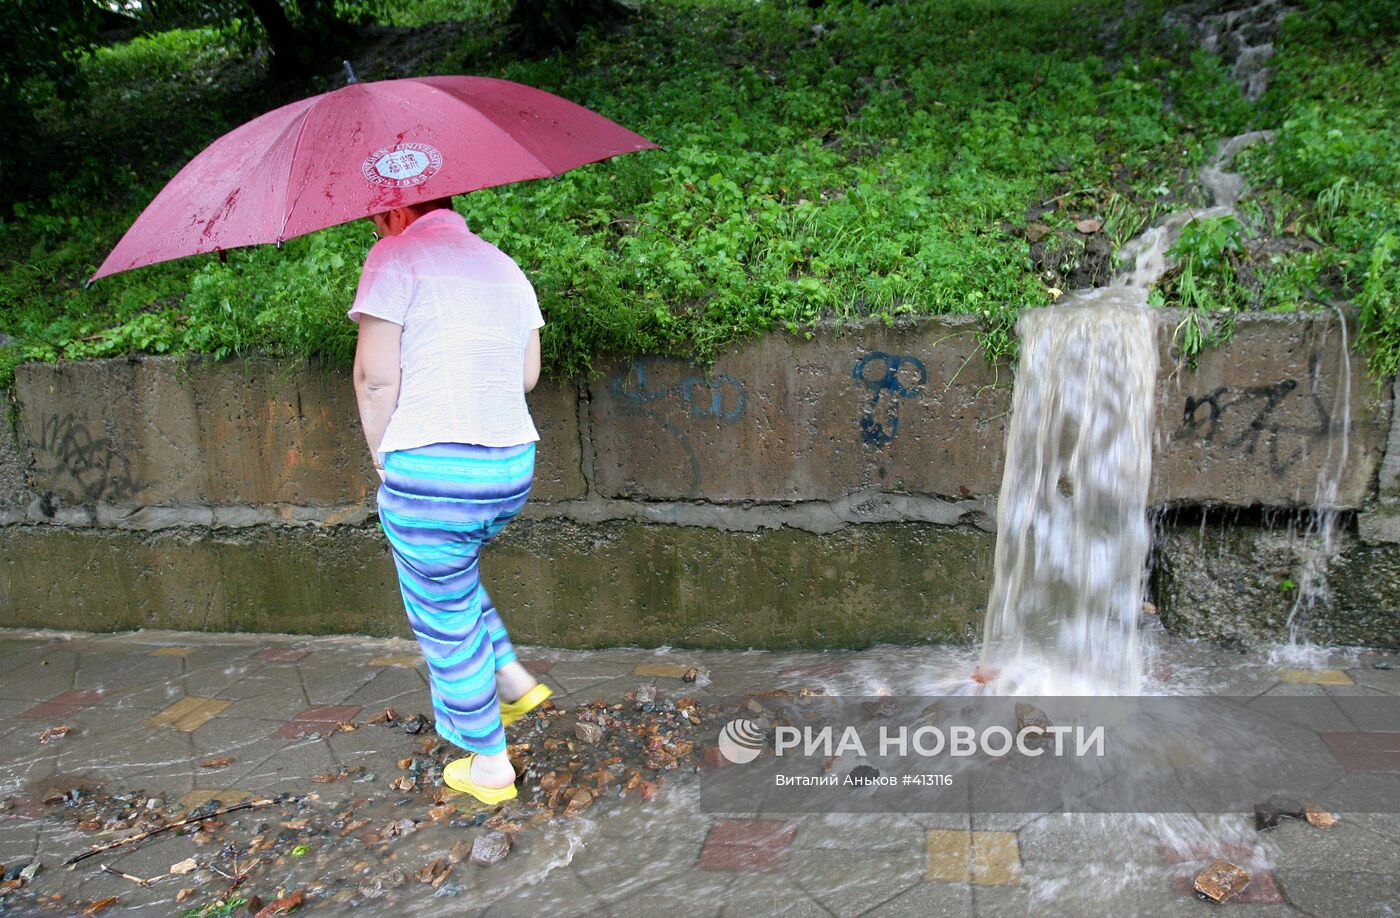 Мощный ливневый циклон во Владивостоке